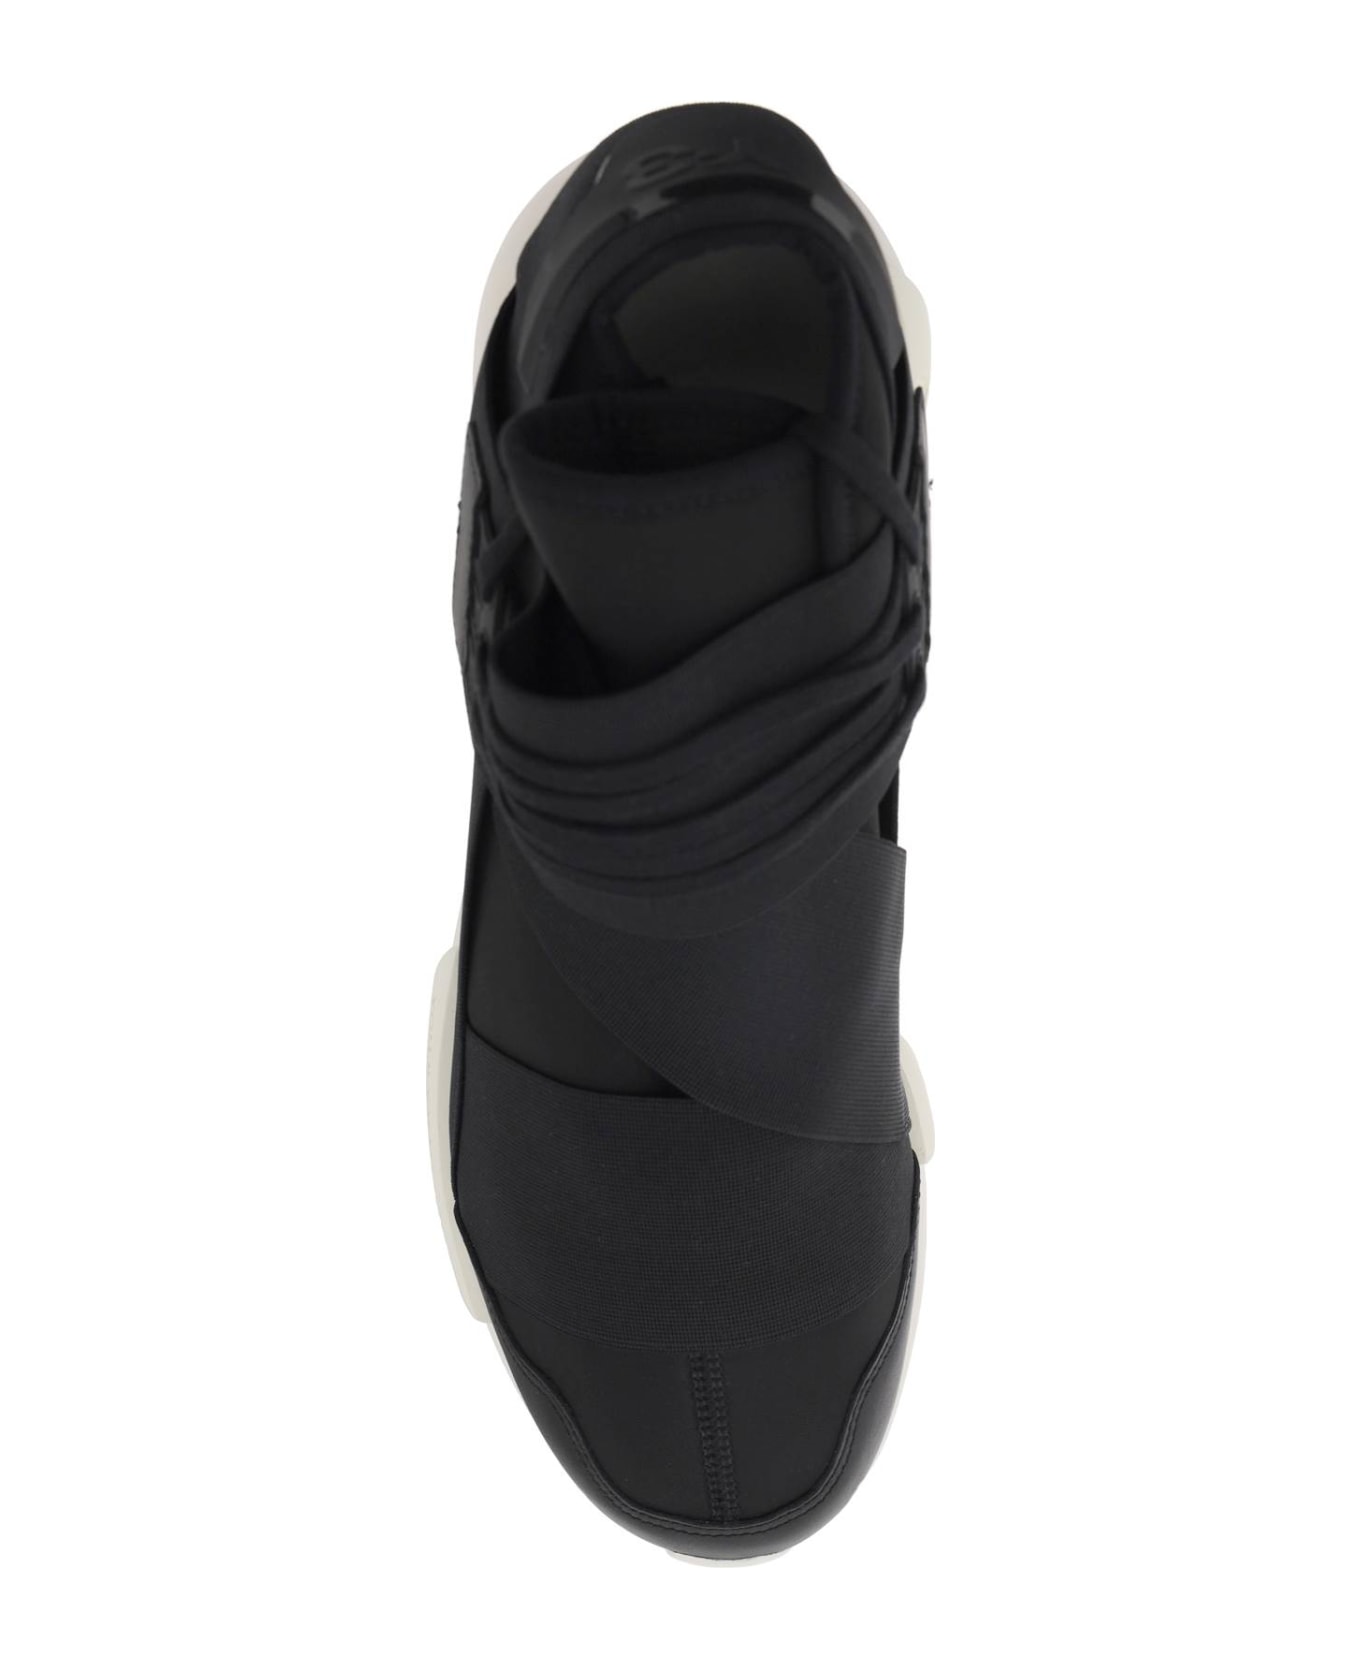 Y-3 Low Qasa Sneakers - BLACKBLACKOWHITE スニーカー